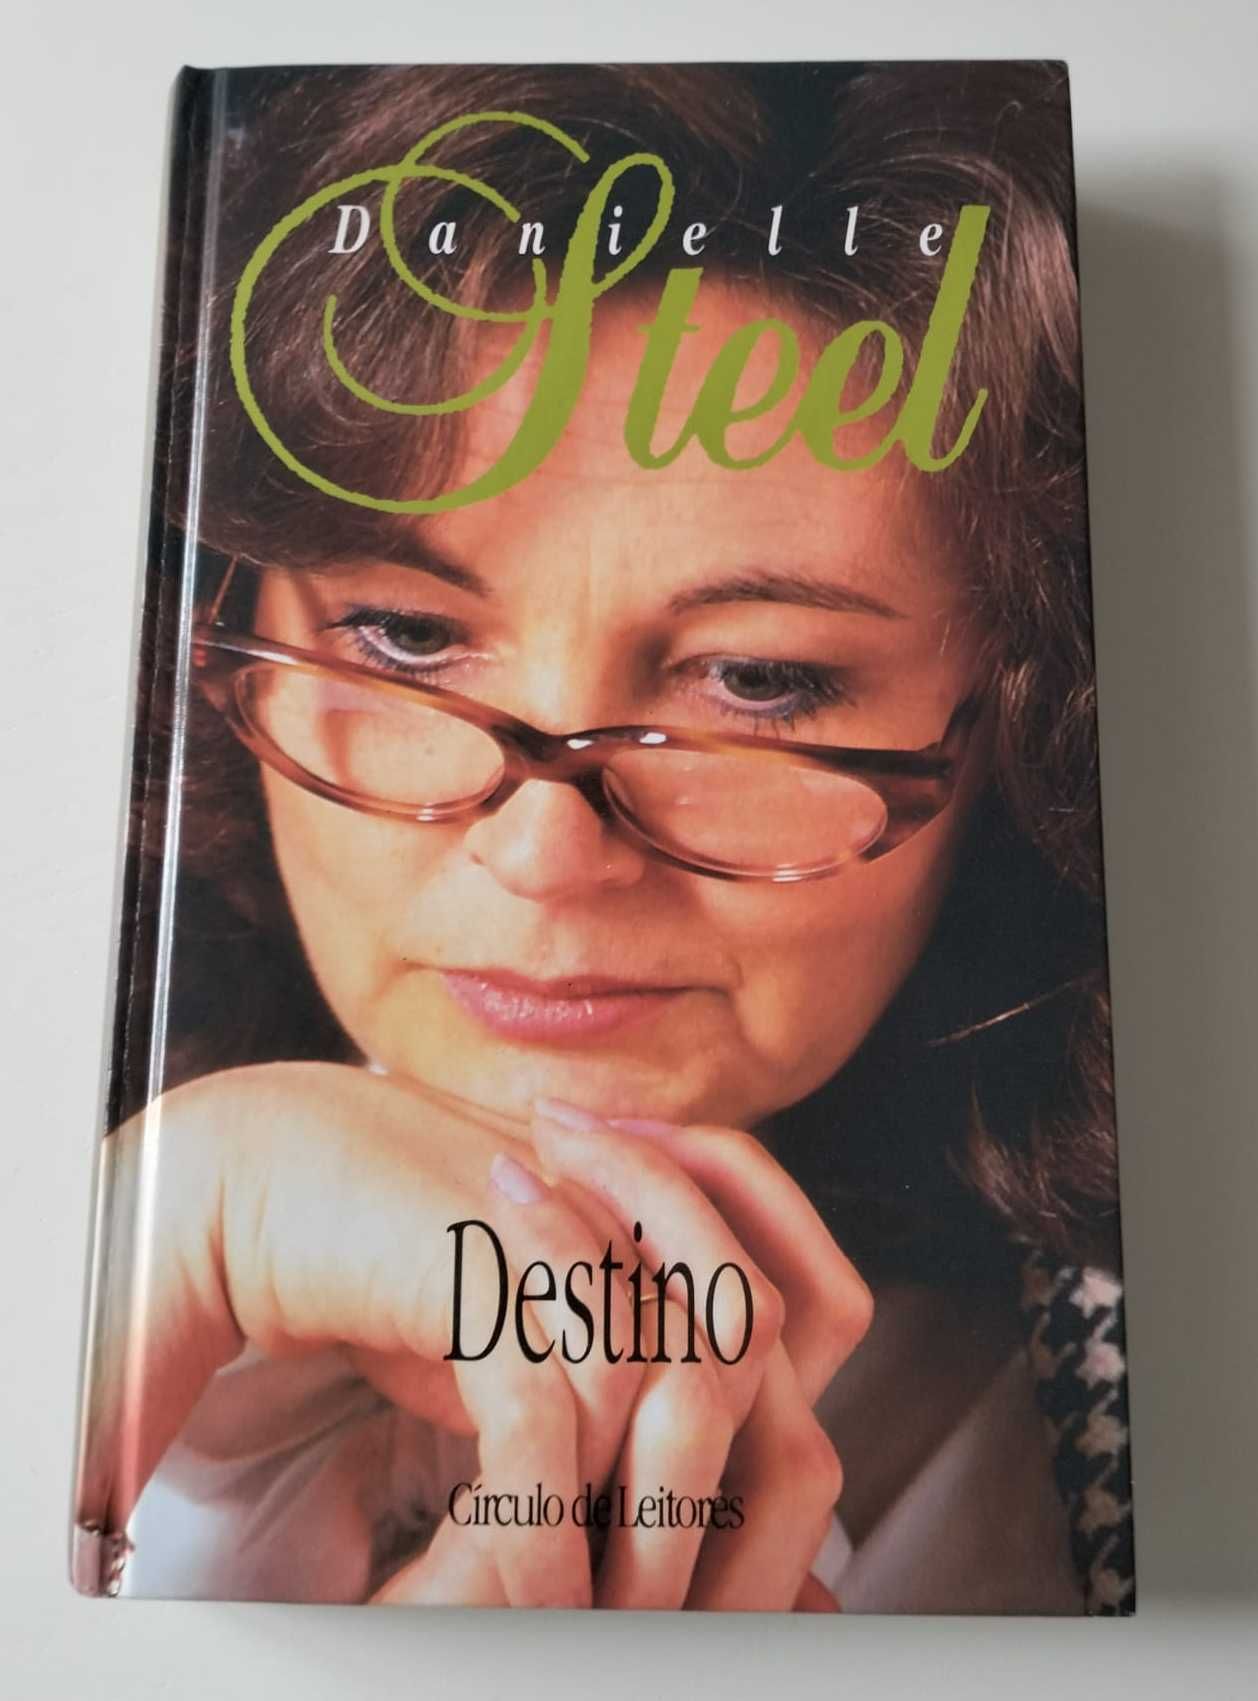 Livro "Destino" - Danielle Steel